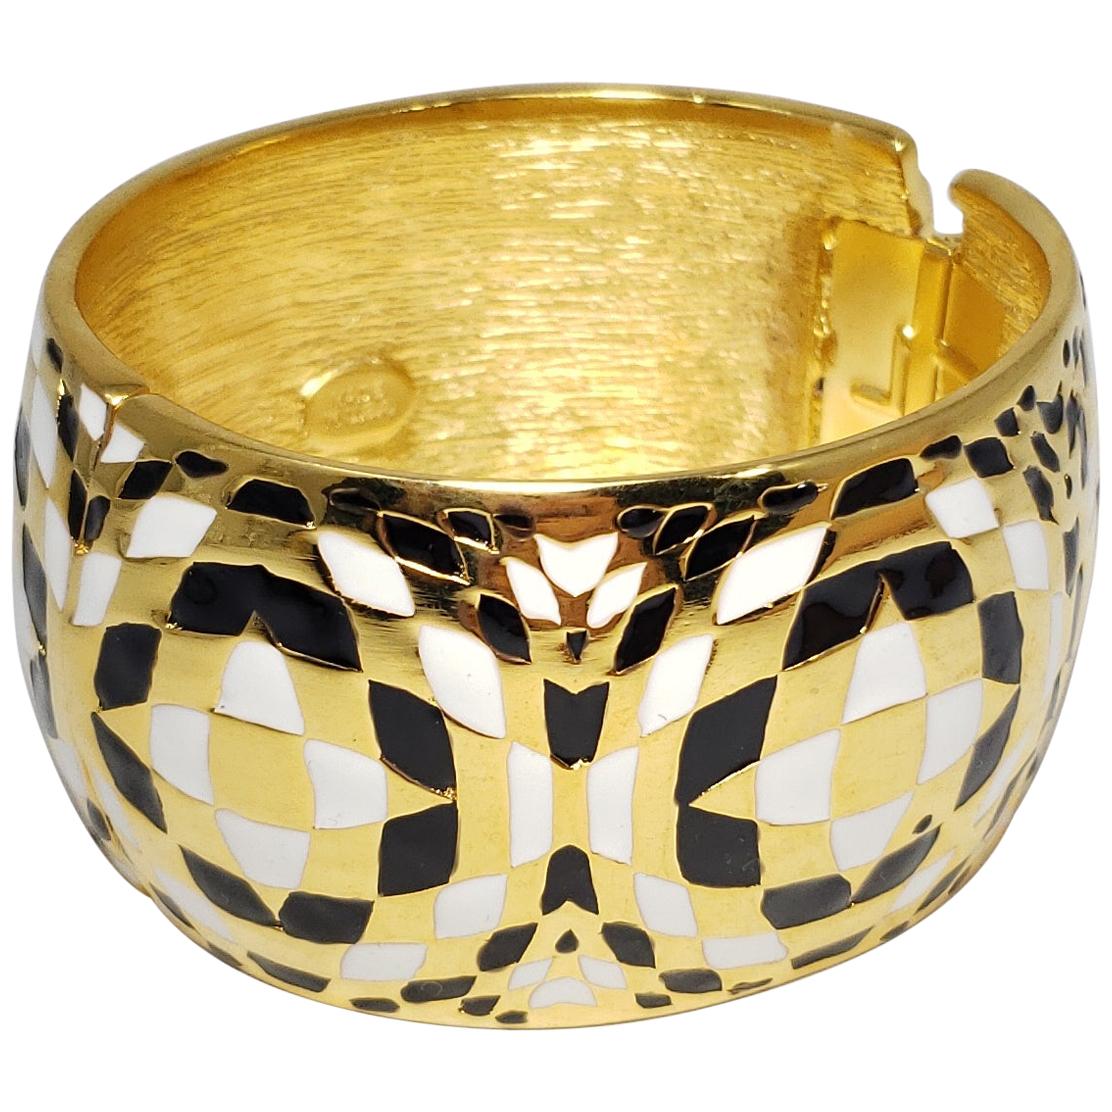 Kenneth Jay Lane KJL Geometric White and Black Enamel Bangle Bracelet in Gold